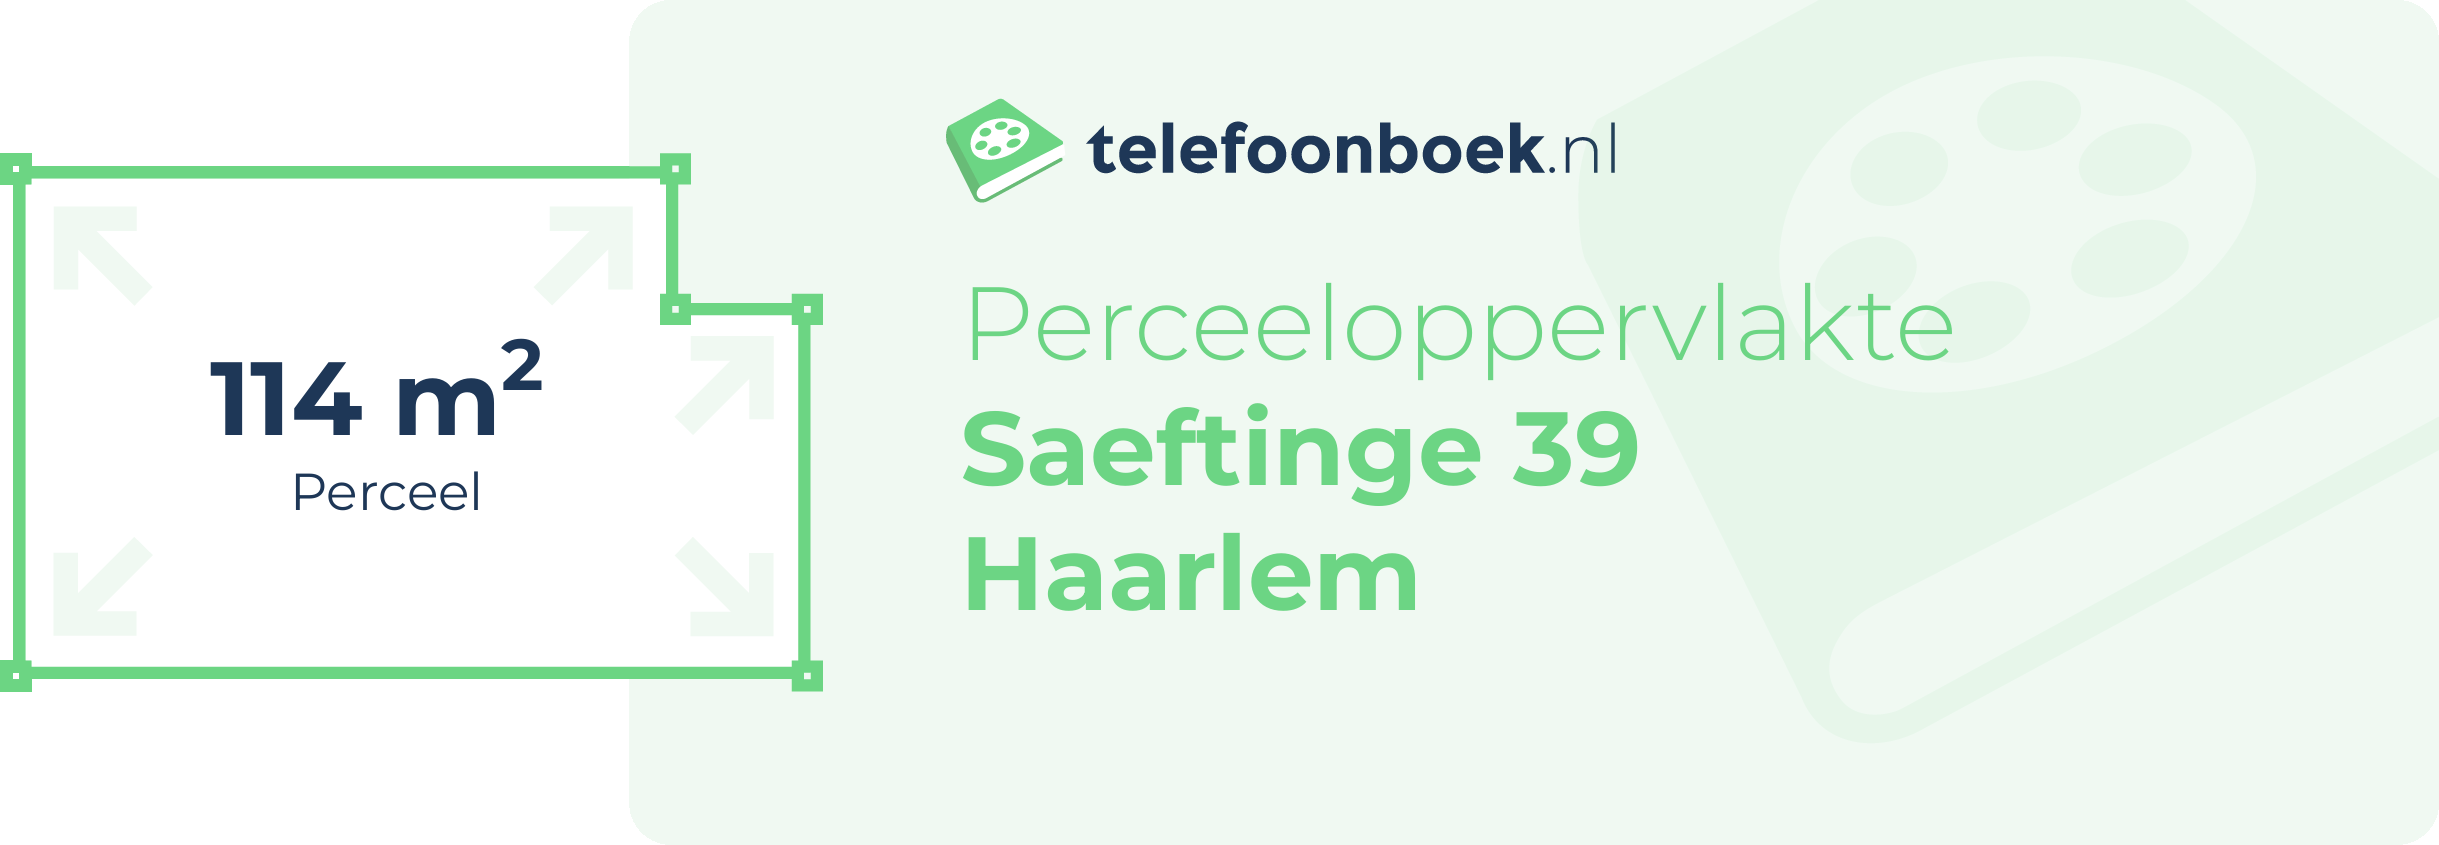 Perceeloppervlakte Saeftinge 39 Haarlem